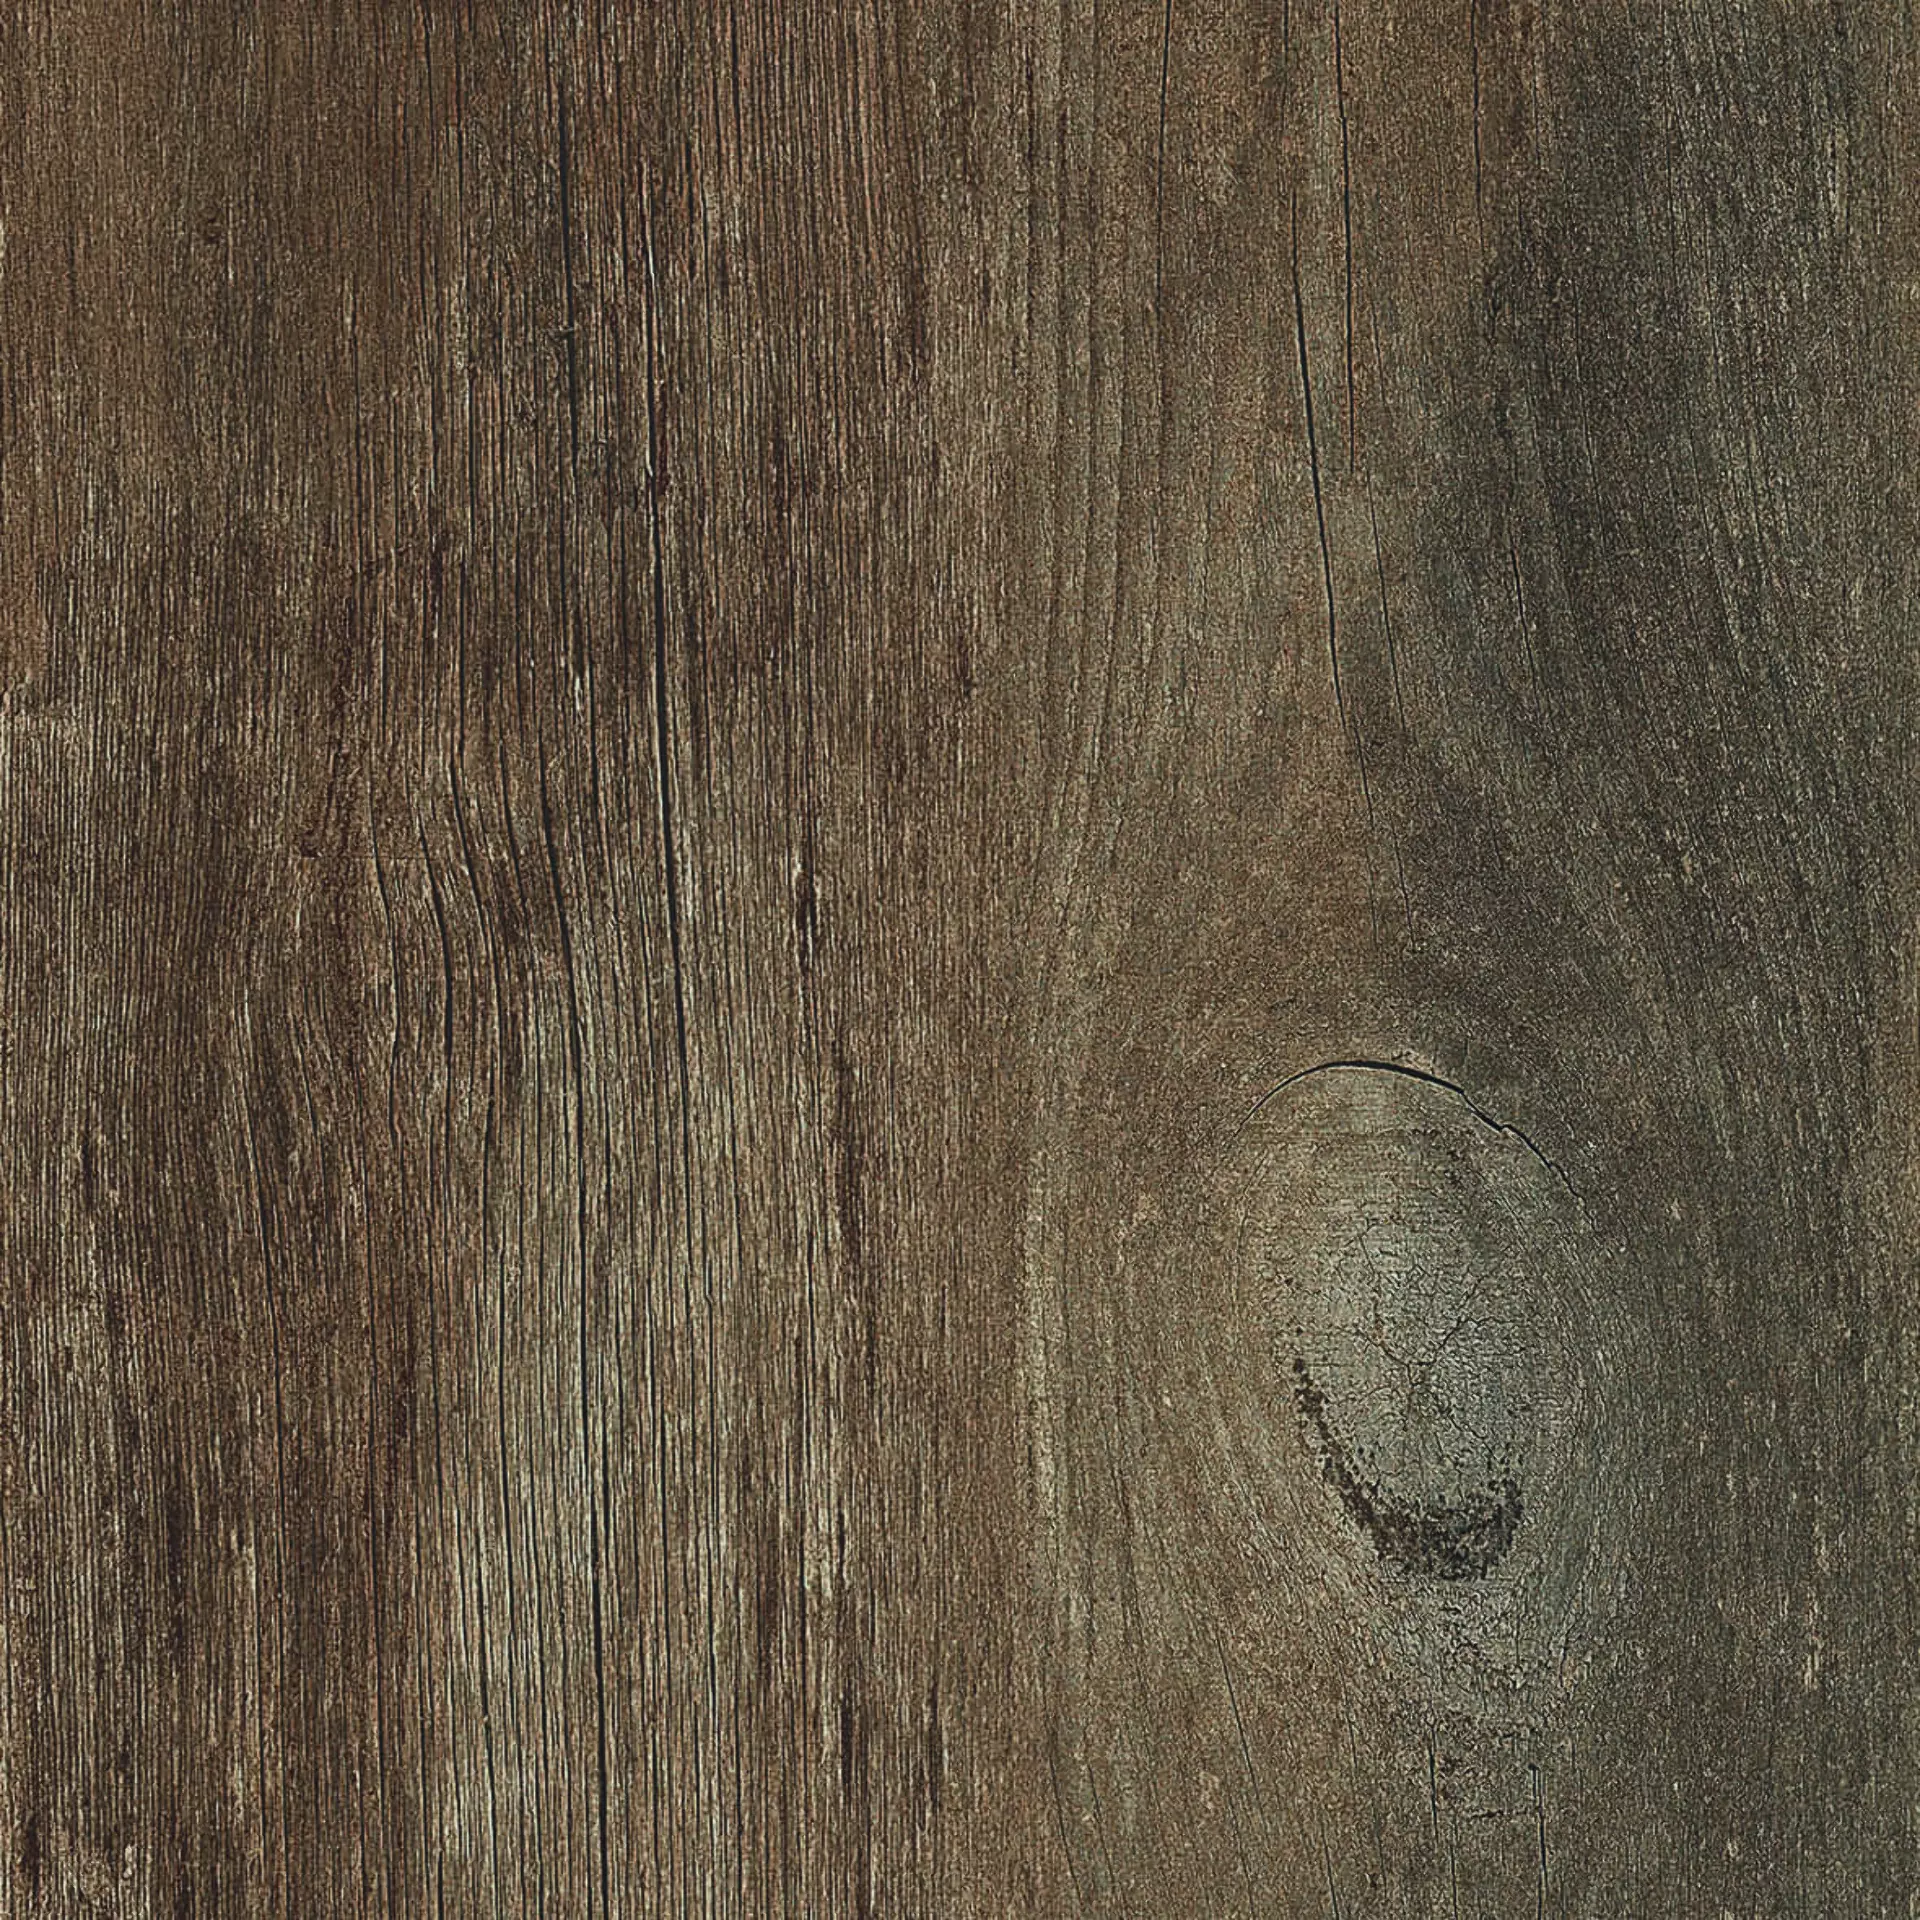 Casalgrande Country Wood Marrone Naturale – Matt 10100165 20x120cm rectified 9mm